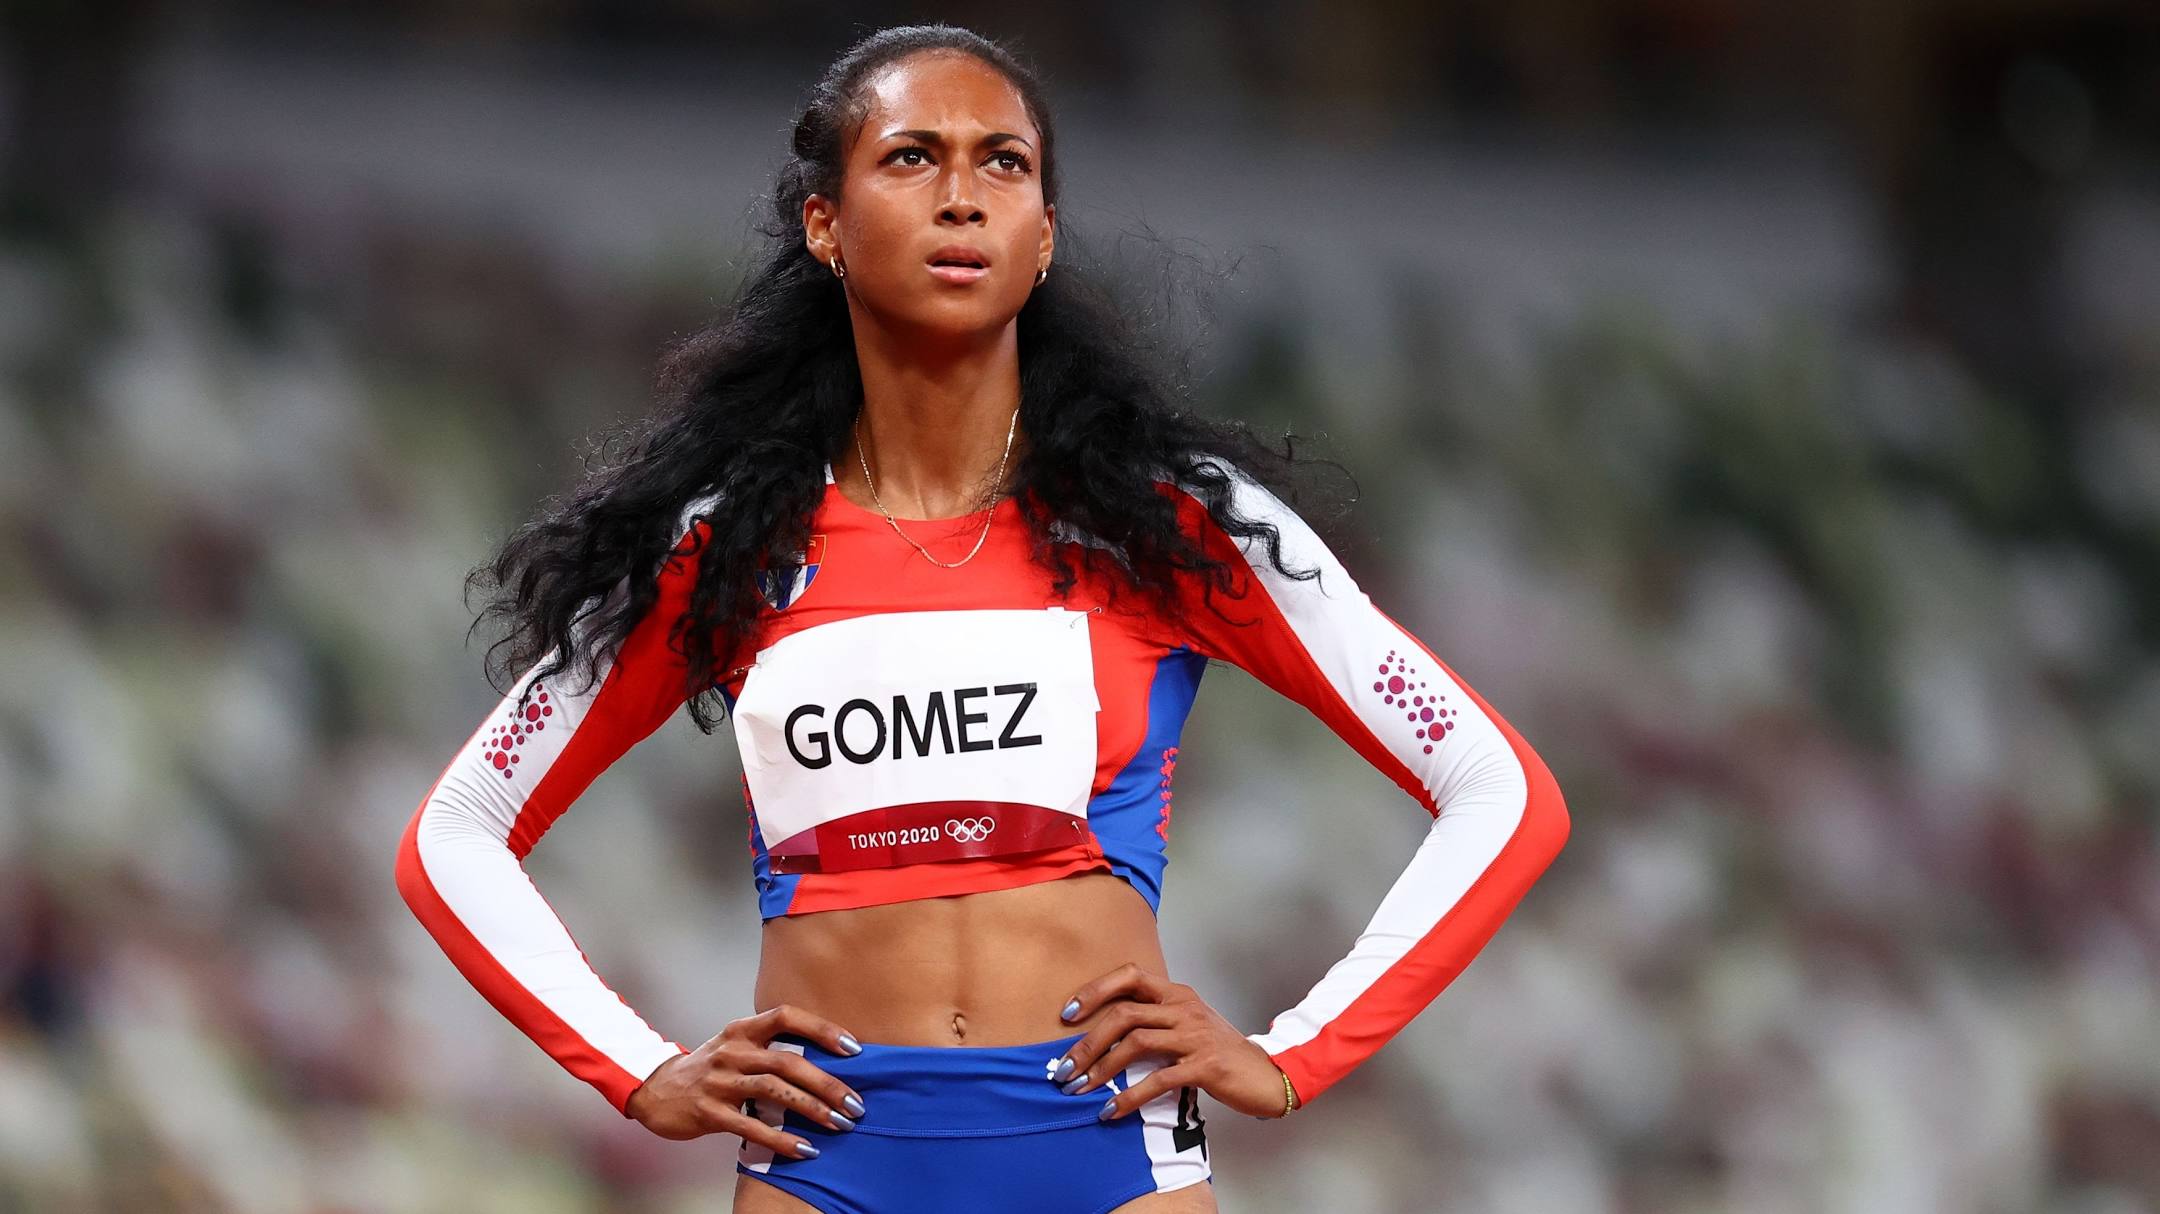 Roxana Gómez - Atletismo - 400m - Eliminatoria - JJOO Tokio 2020